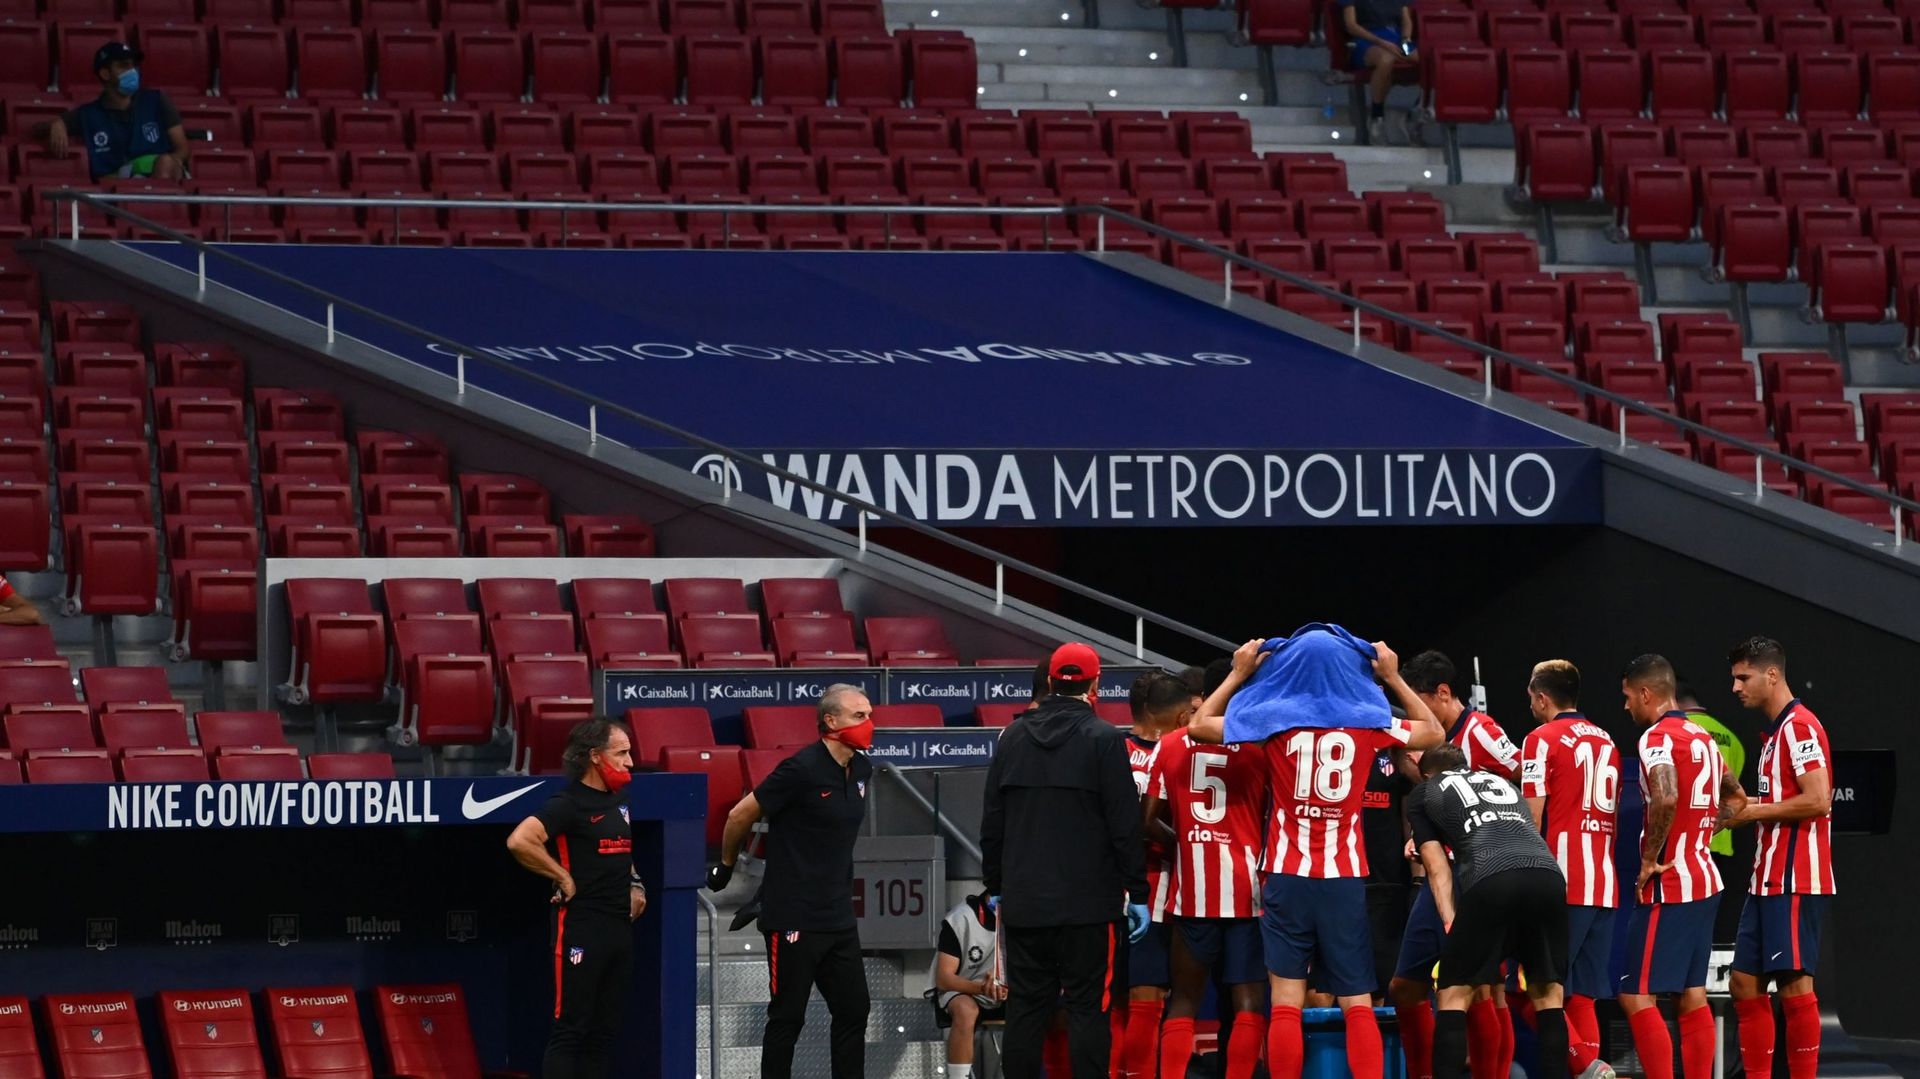 Deux membres de l'Atlético Madrid, dont l'identité n'a pas été révélée, ont été testés positifs au Covid-19 à quatre jours du quart de finale de Ligue des champions contre Leipzig jeudi à Lisbonne, a annoncé le club espagnol dimanche dans un communiqué.